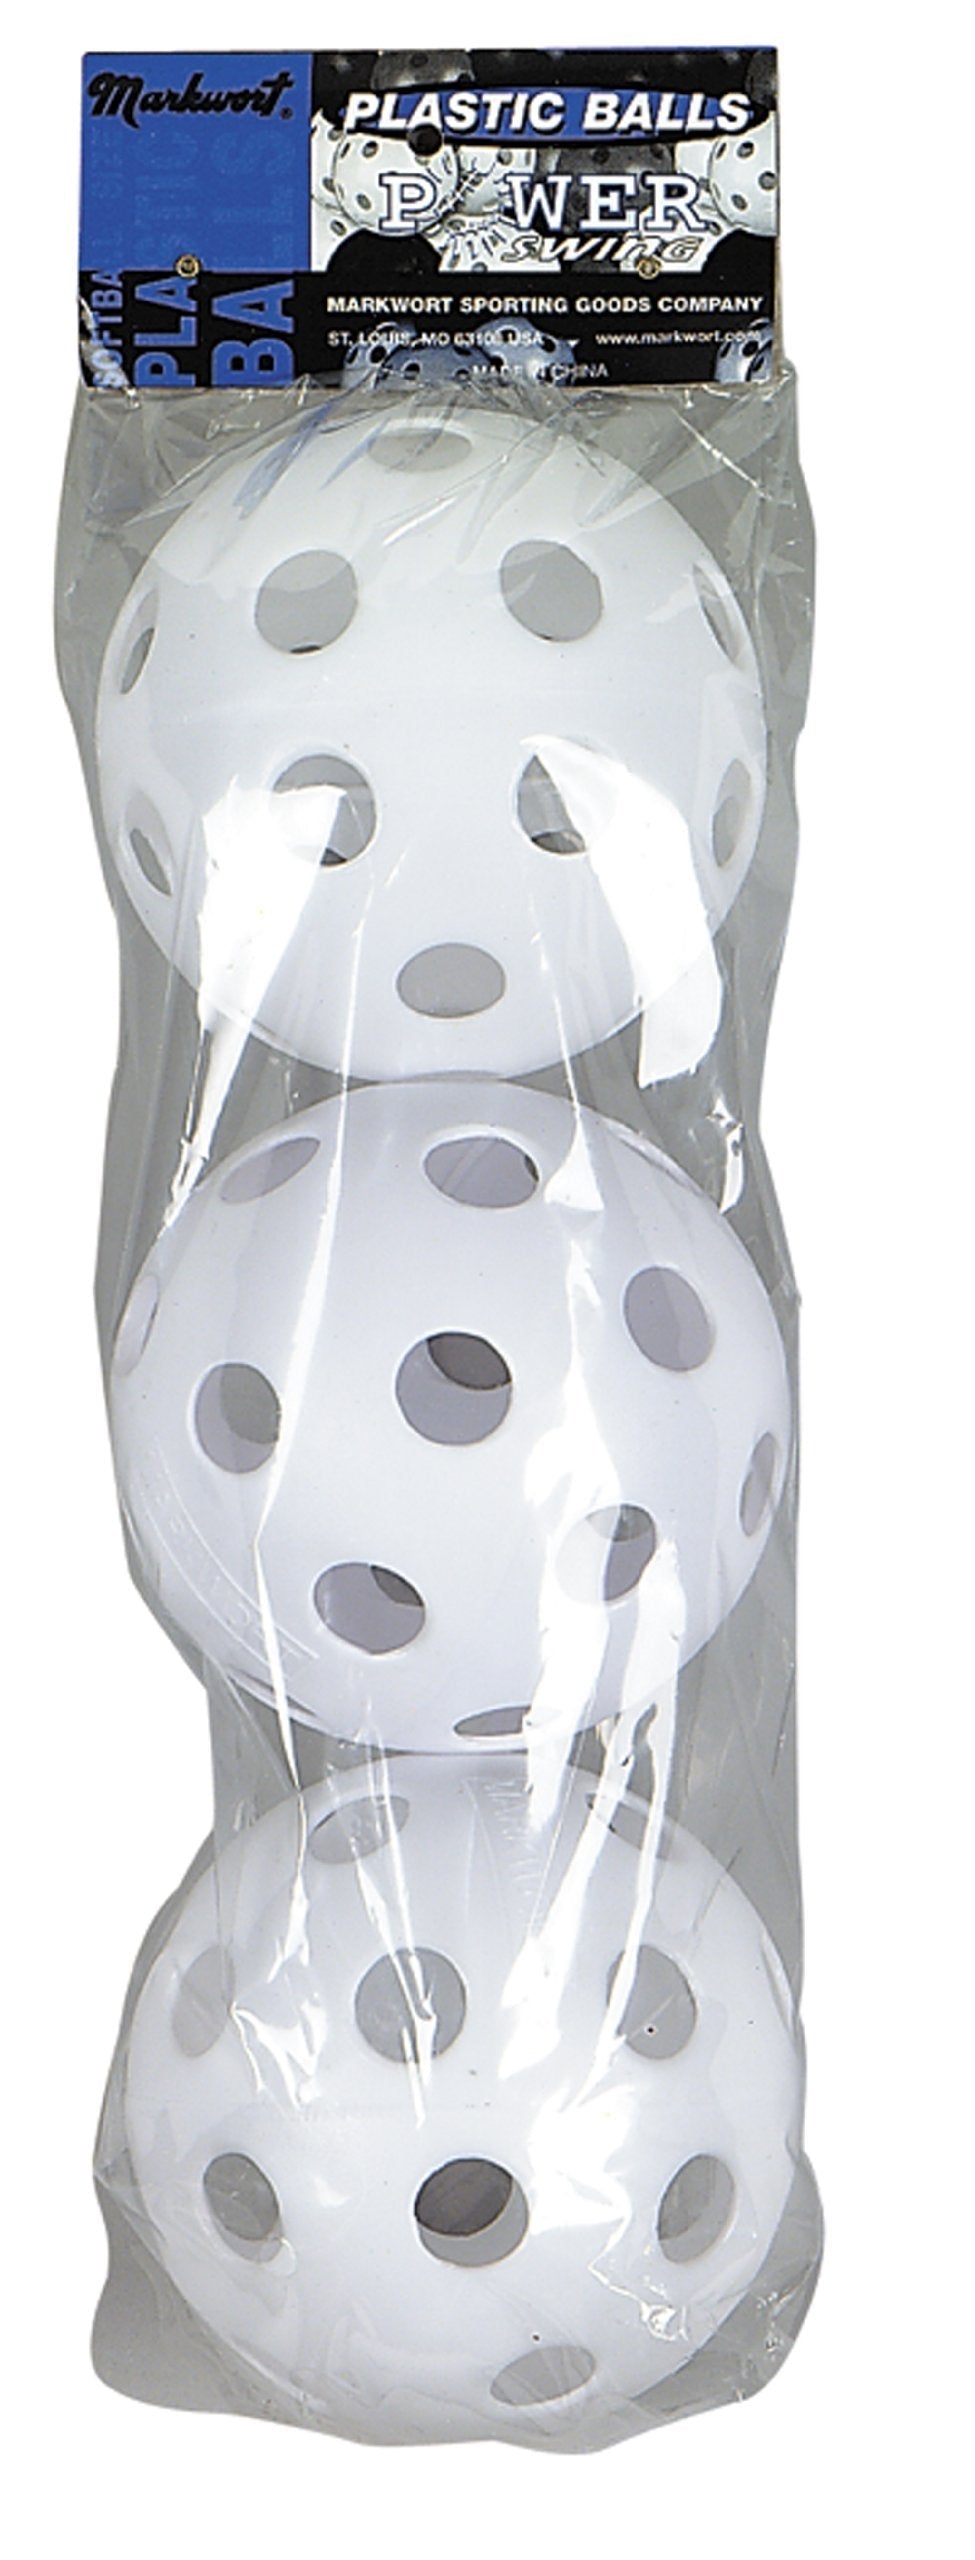 [AUSTRALIA] - Markwort Softball Pliable Plastic Balls in Retail Package White 